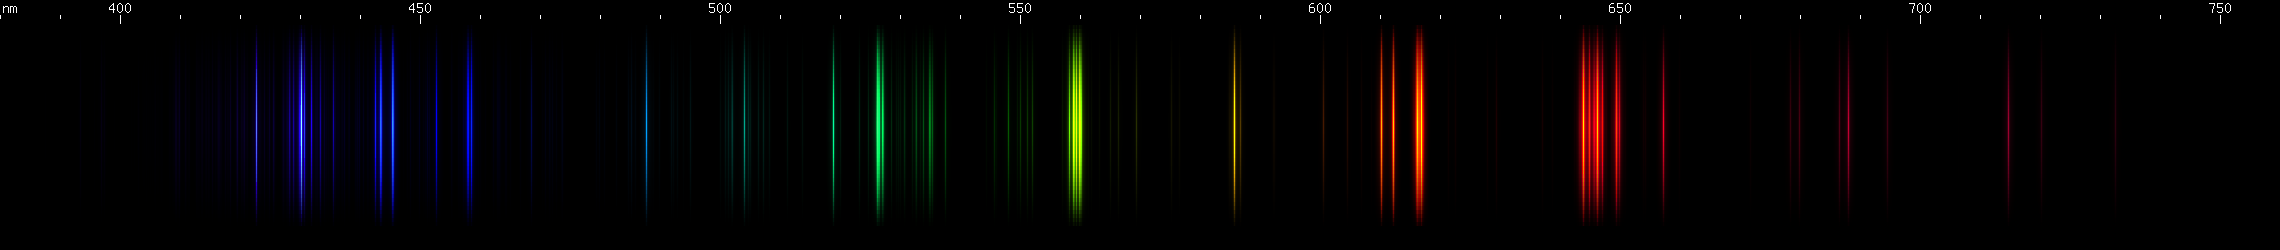 Spectral lines of Calcium.